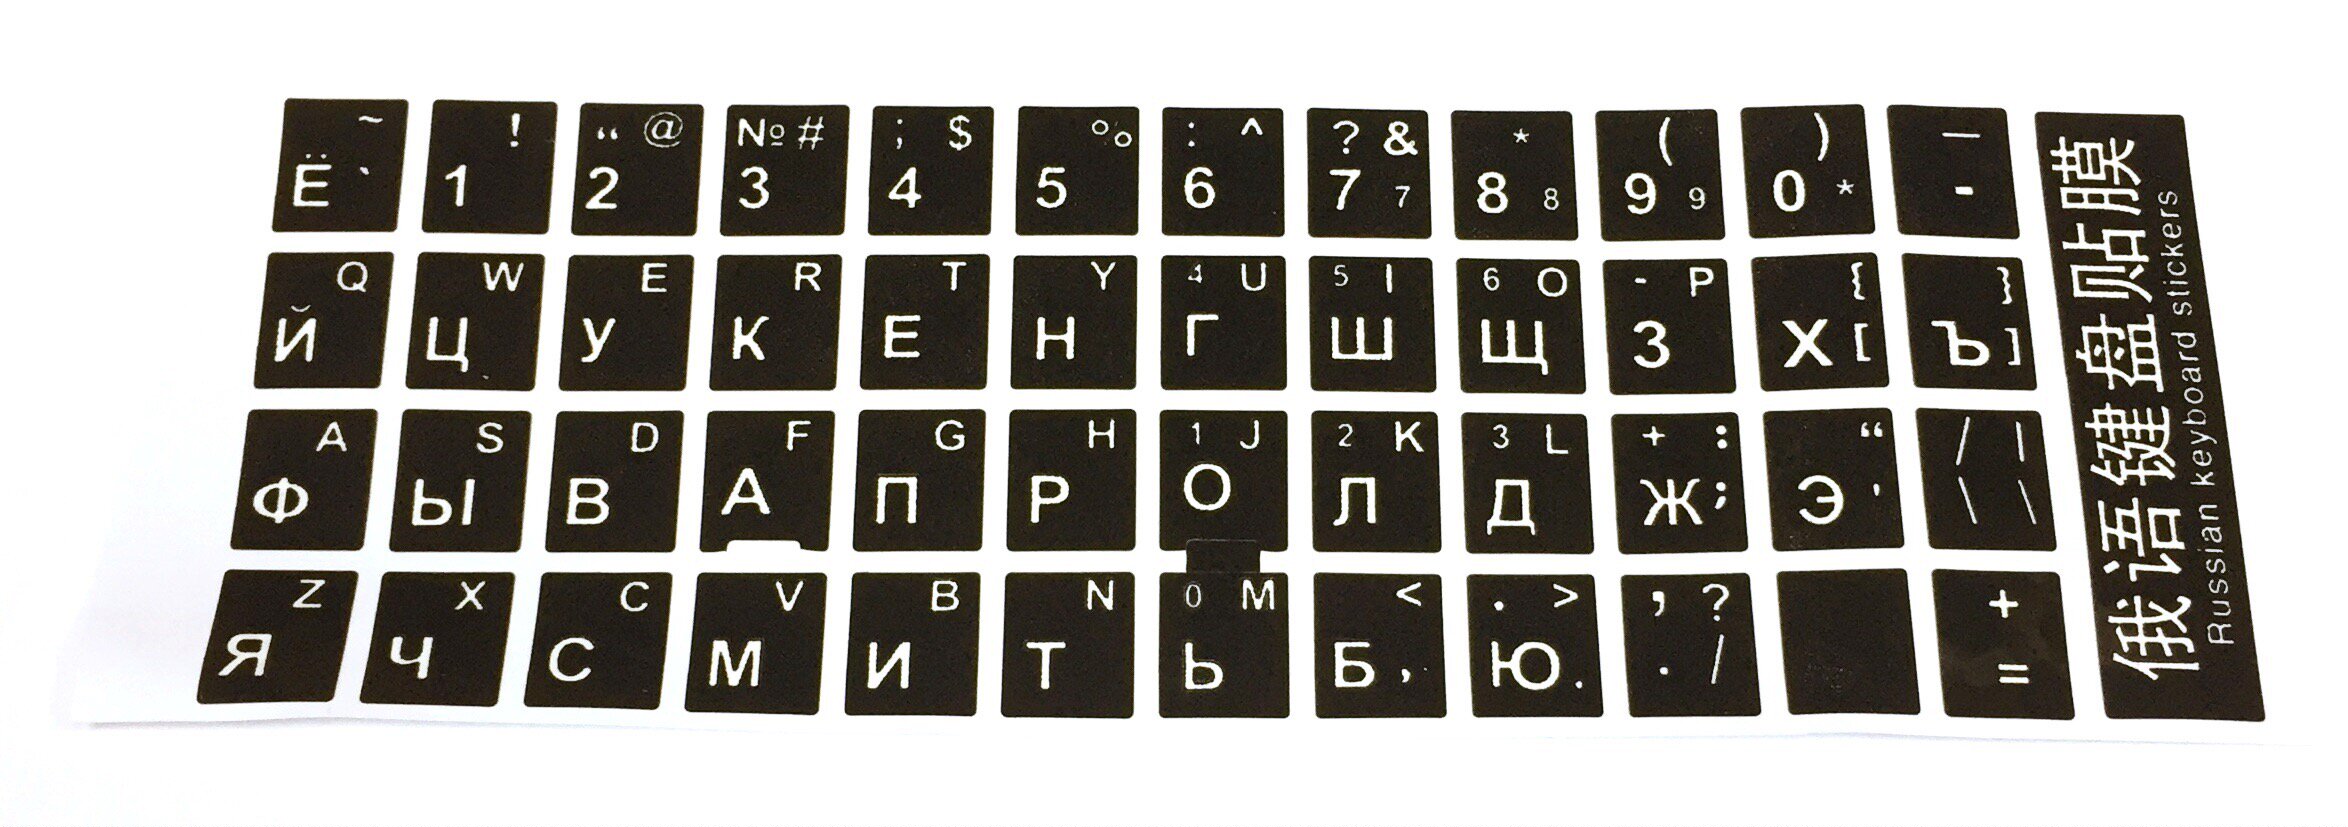 Клавиатура ноутбука раскладка русско-английская